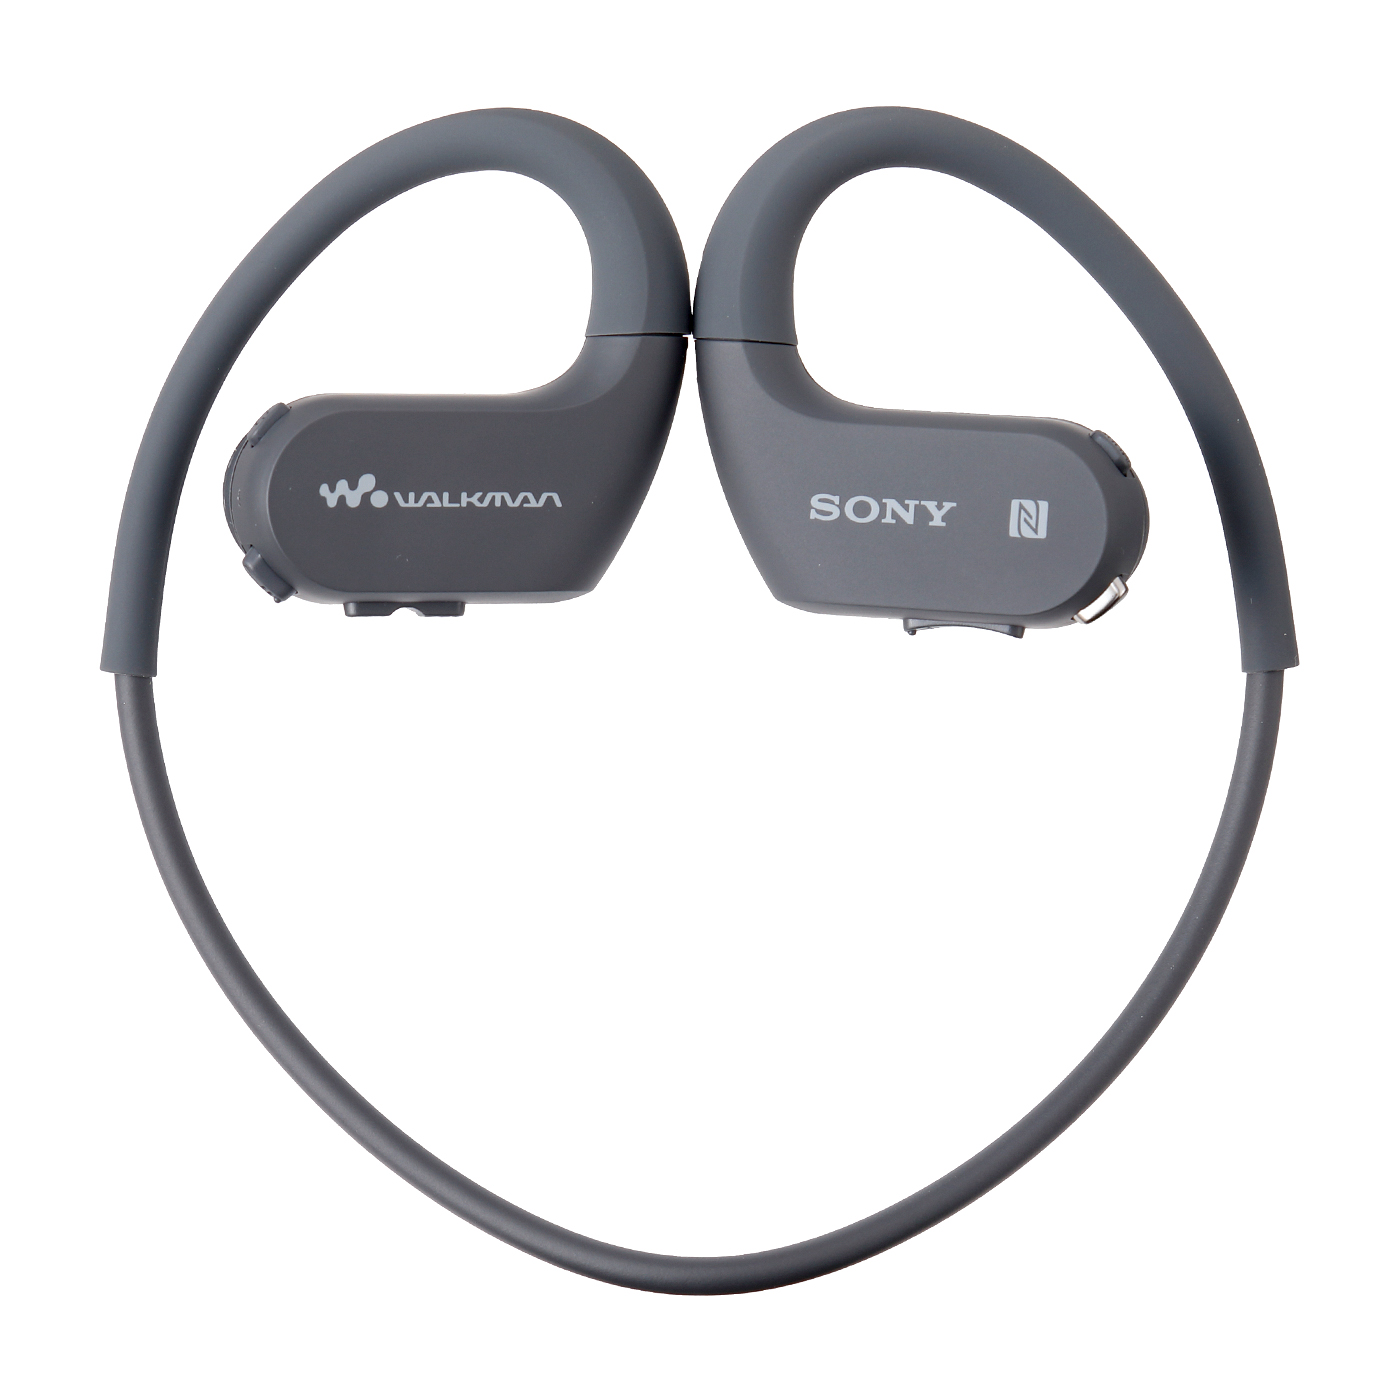 ソニー ヘッドホン一体型ウォークマン Wシリーズ NW-WS623 4GB スポーツ用 MP3プレーヤー Bluetooth対応  防水/海水/防塵/耐寒熱性能/外音取込み機能搭載 ブル イヤホン、ヘッドホン